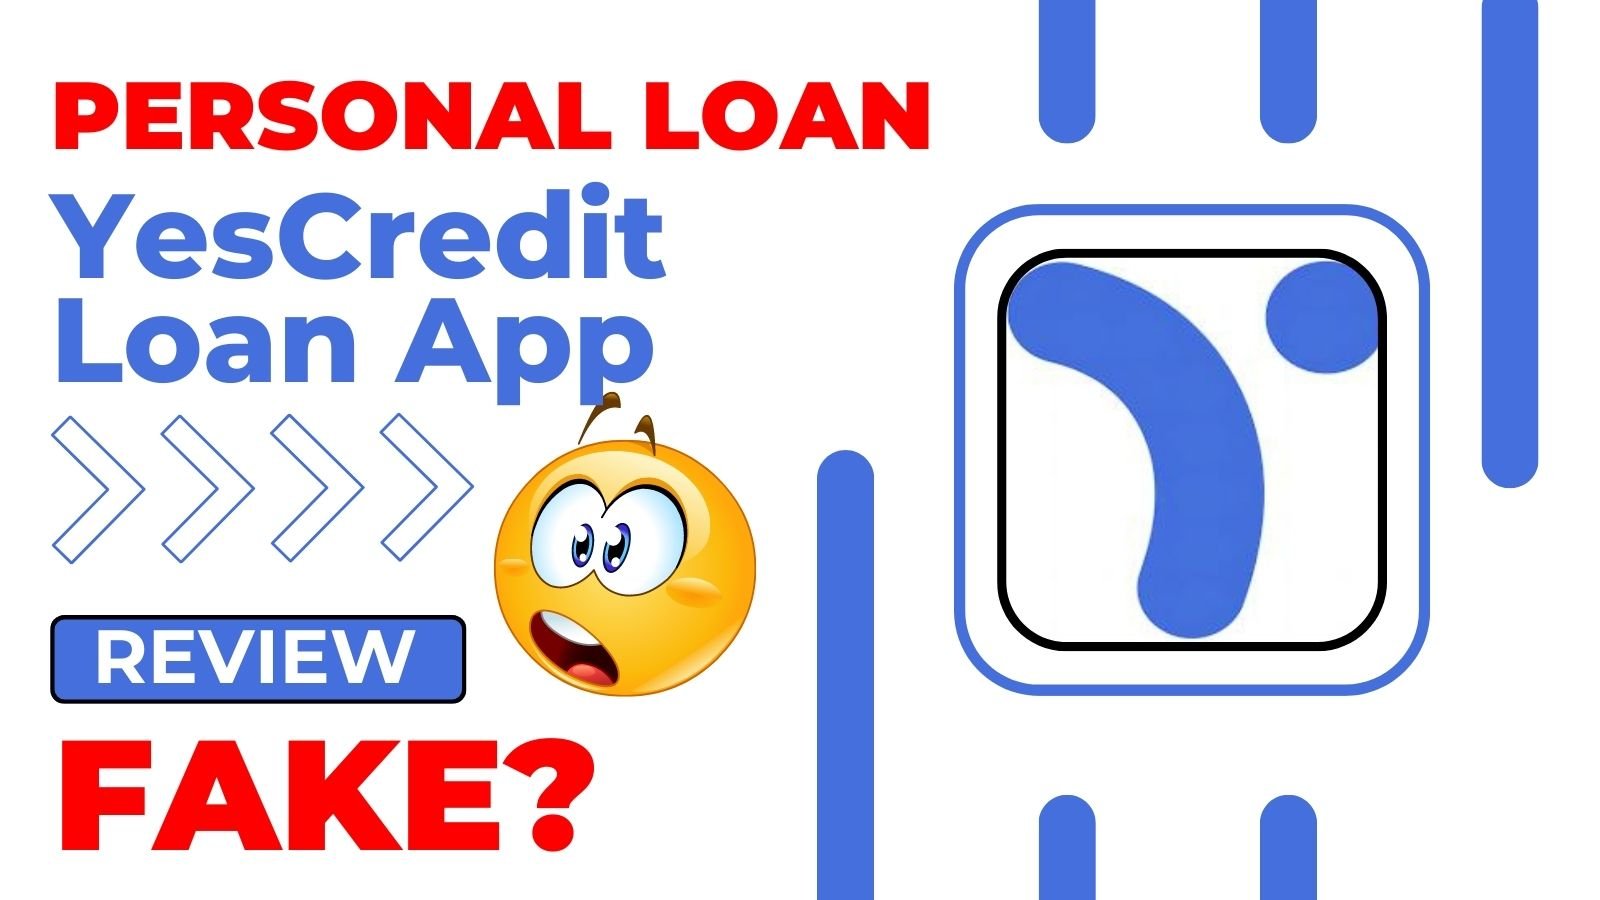 Yescredit Loan App Review